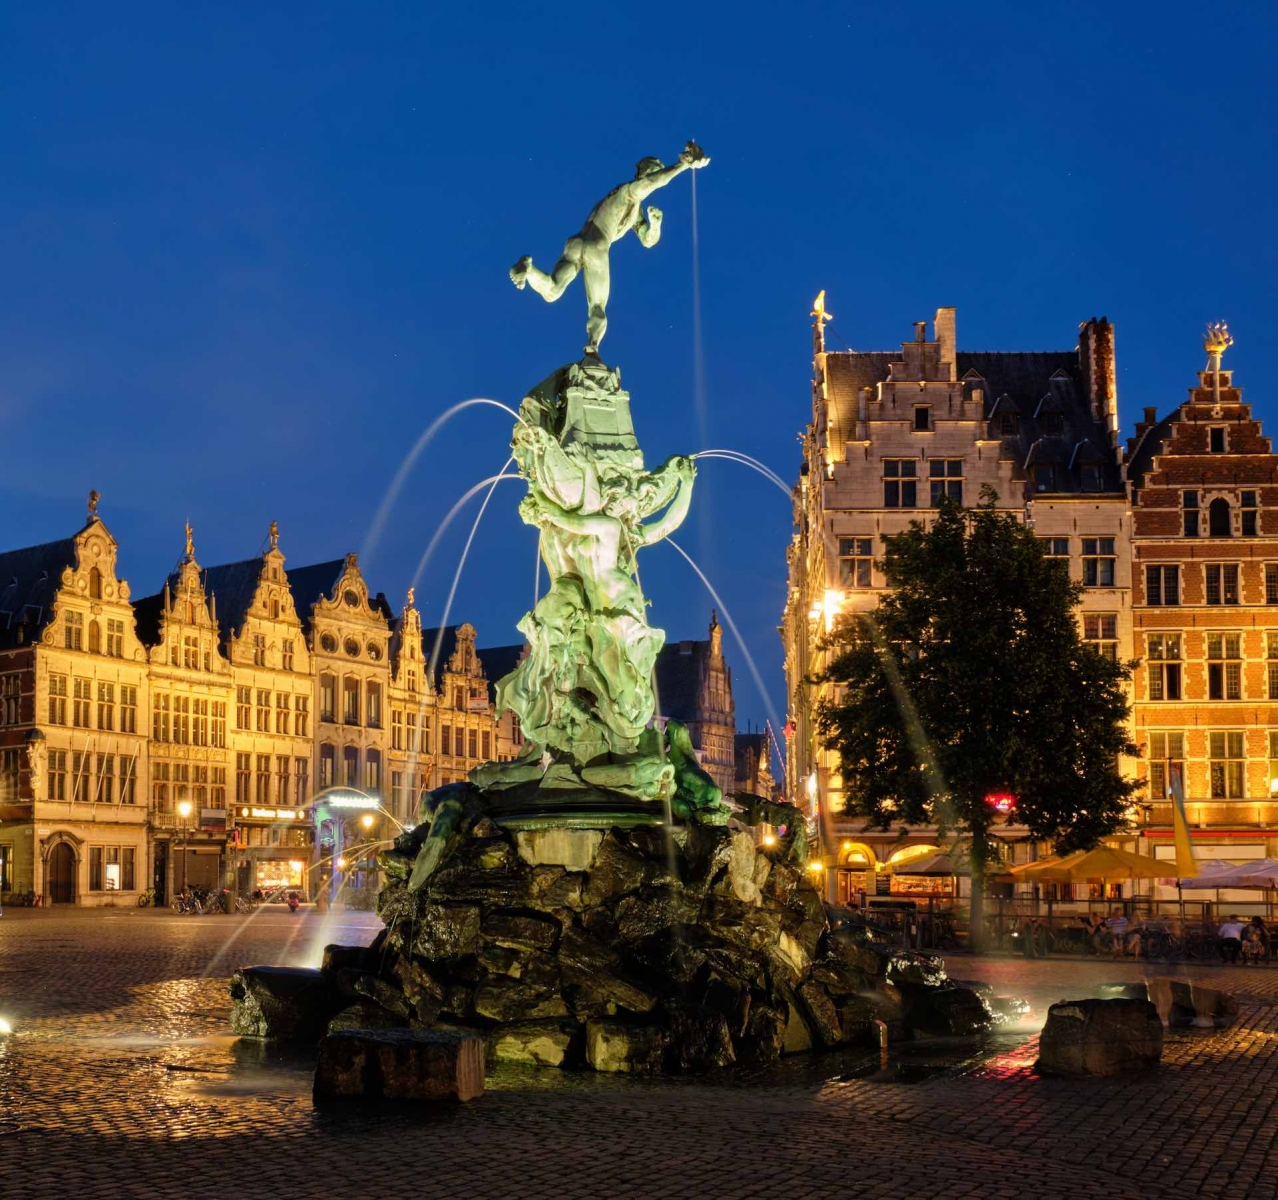 Antwerp Grote Markt con la famosa estatua y fuente de Brabo por la noche, Bélgica